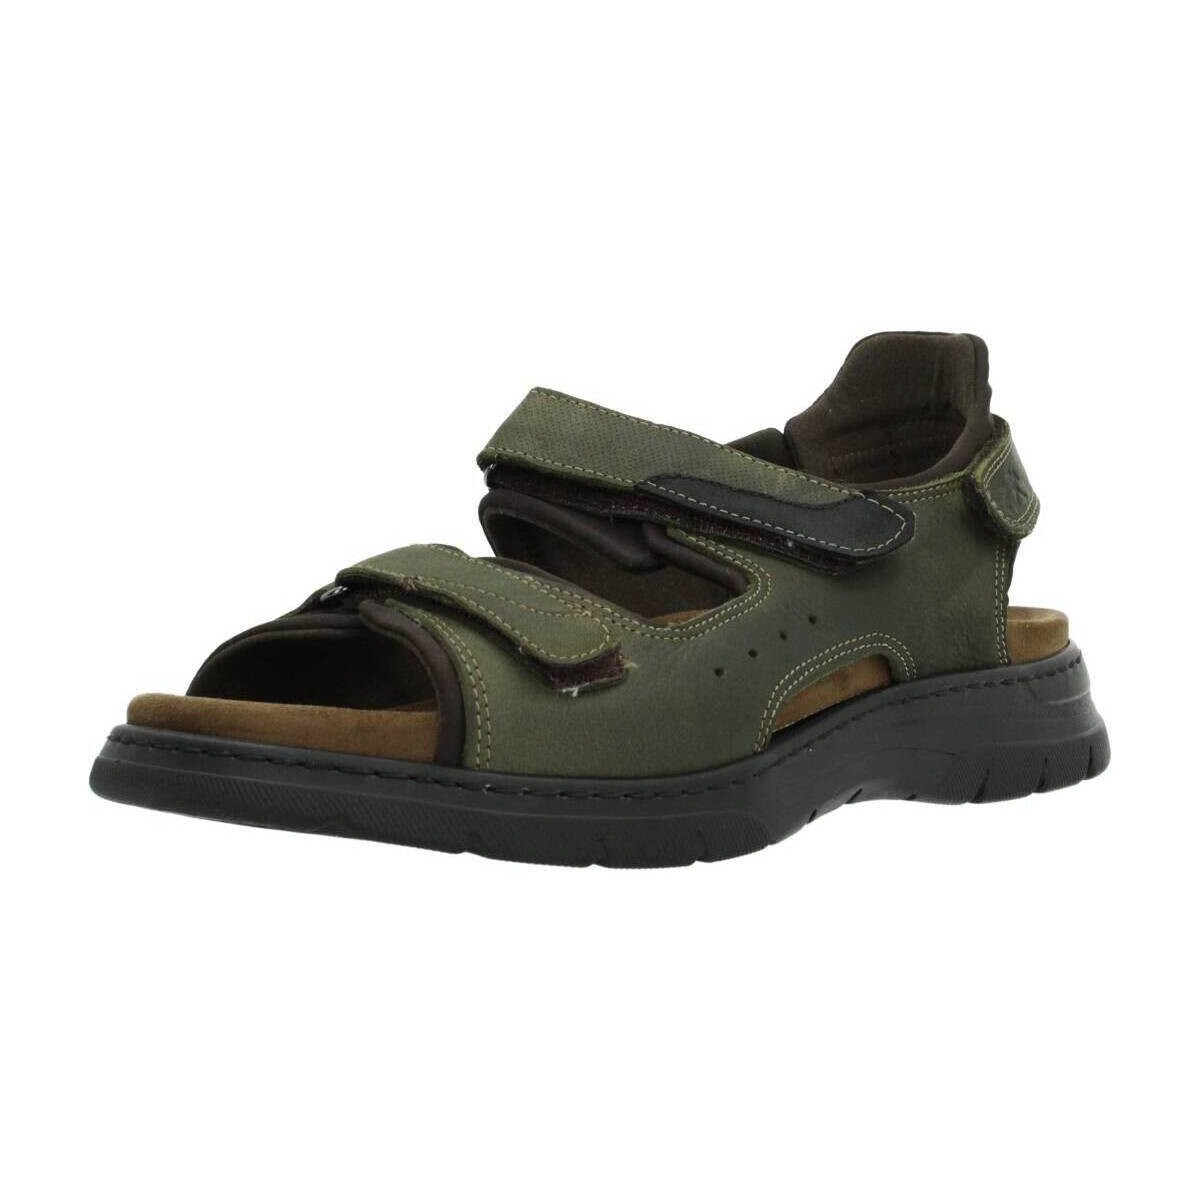 Παπούτσια Άνδρας Σανδάλια / Πέδιλα Fluchos F1773 Green